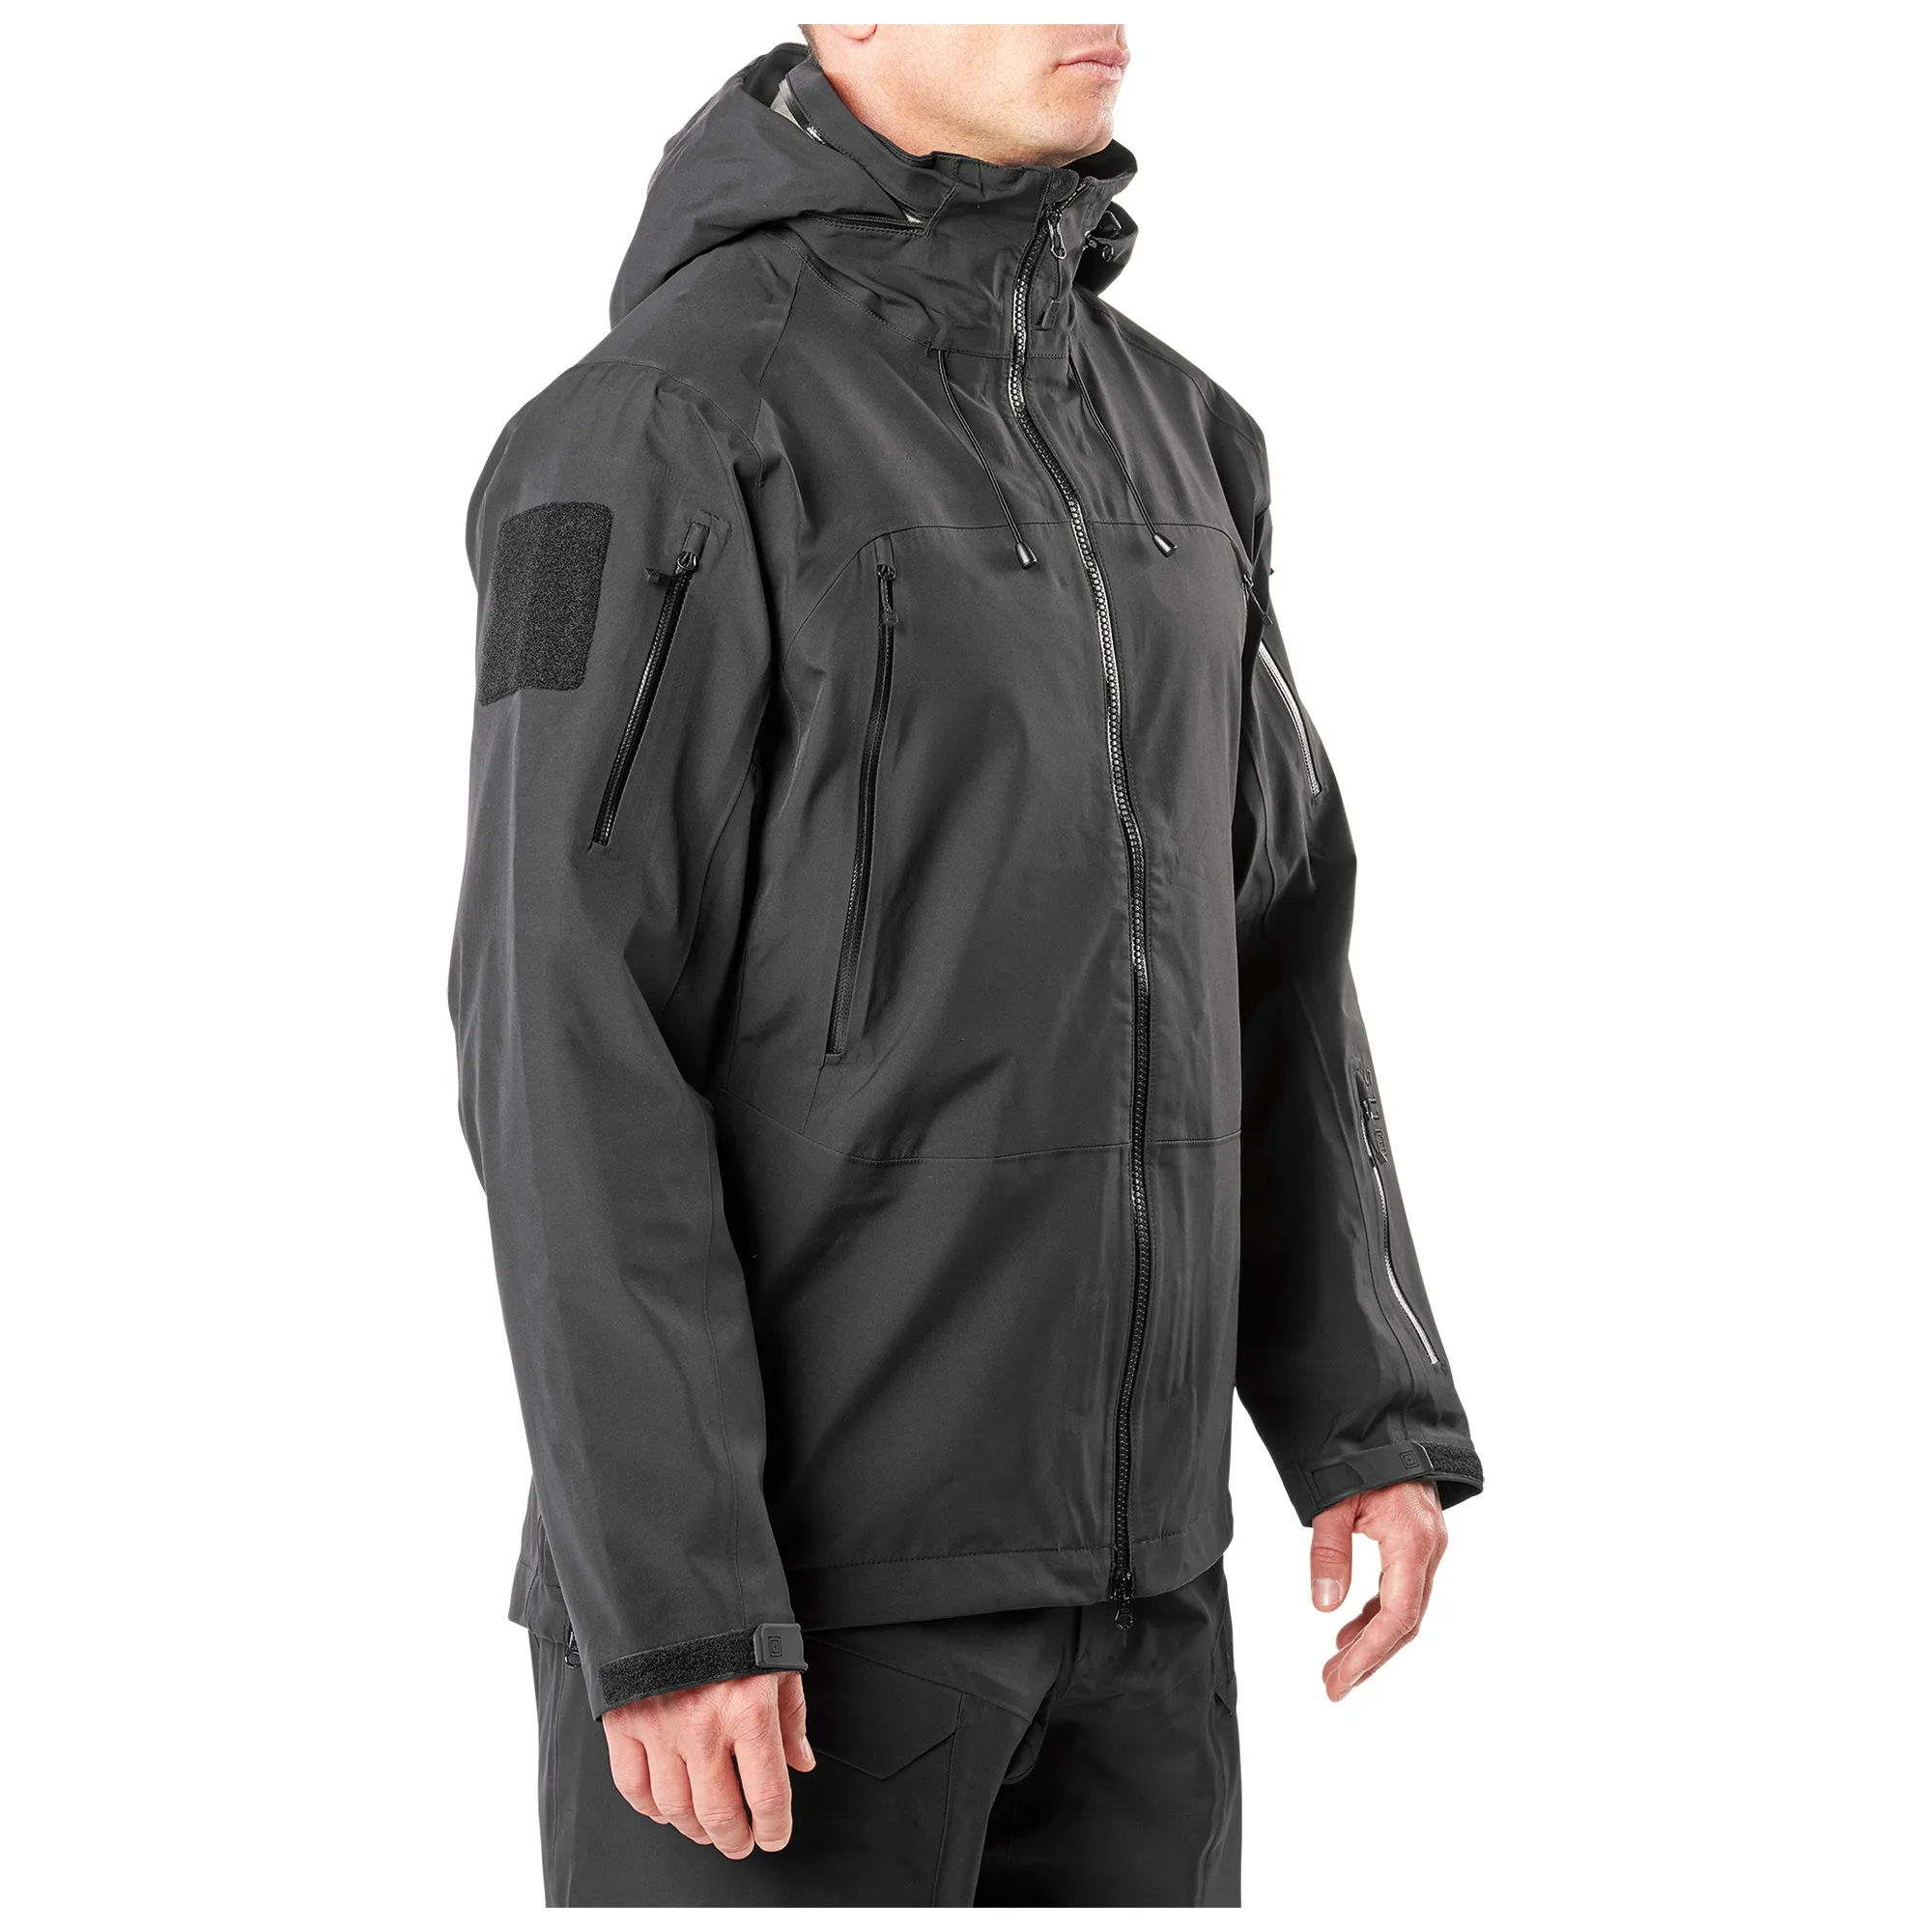 XPRT Waterproof Jacket